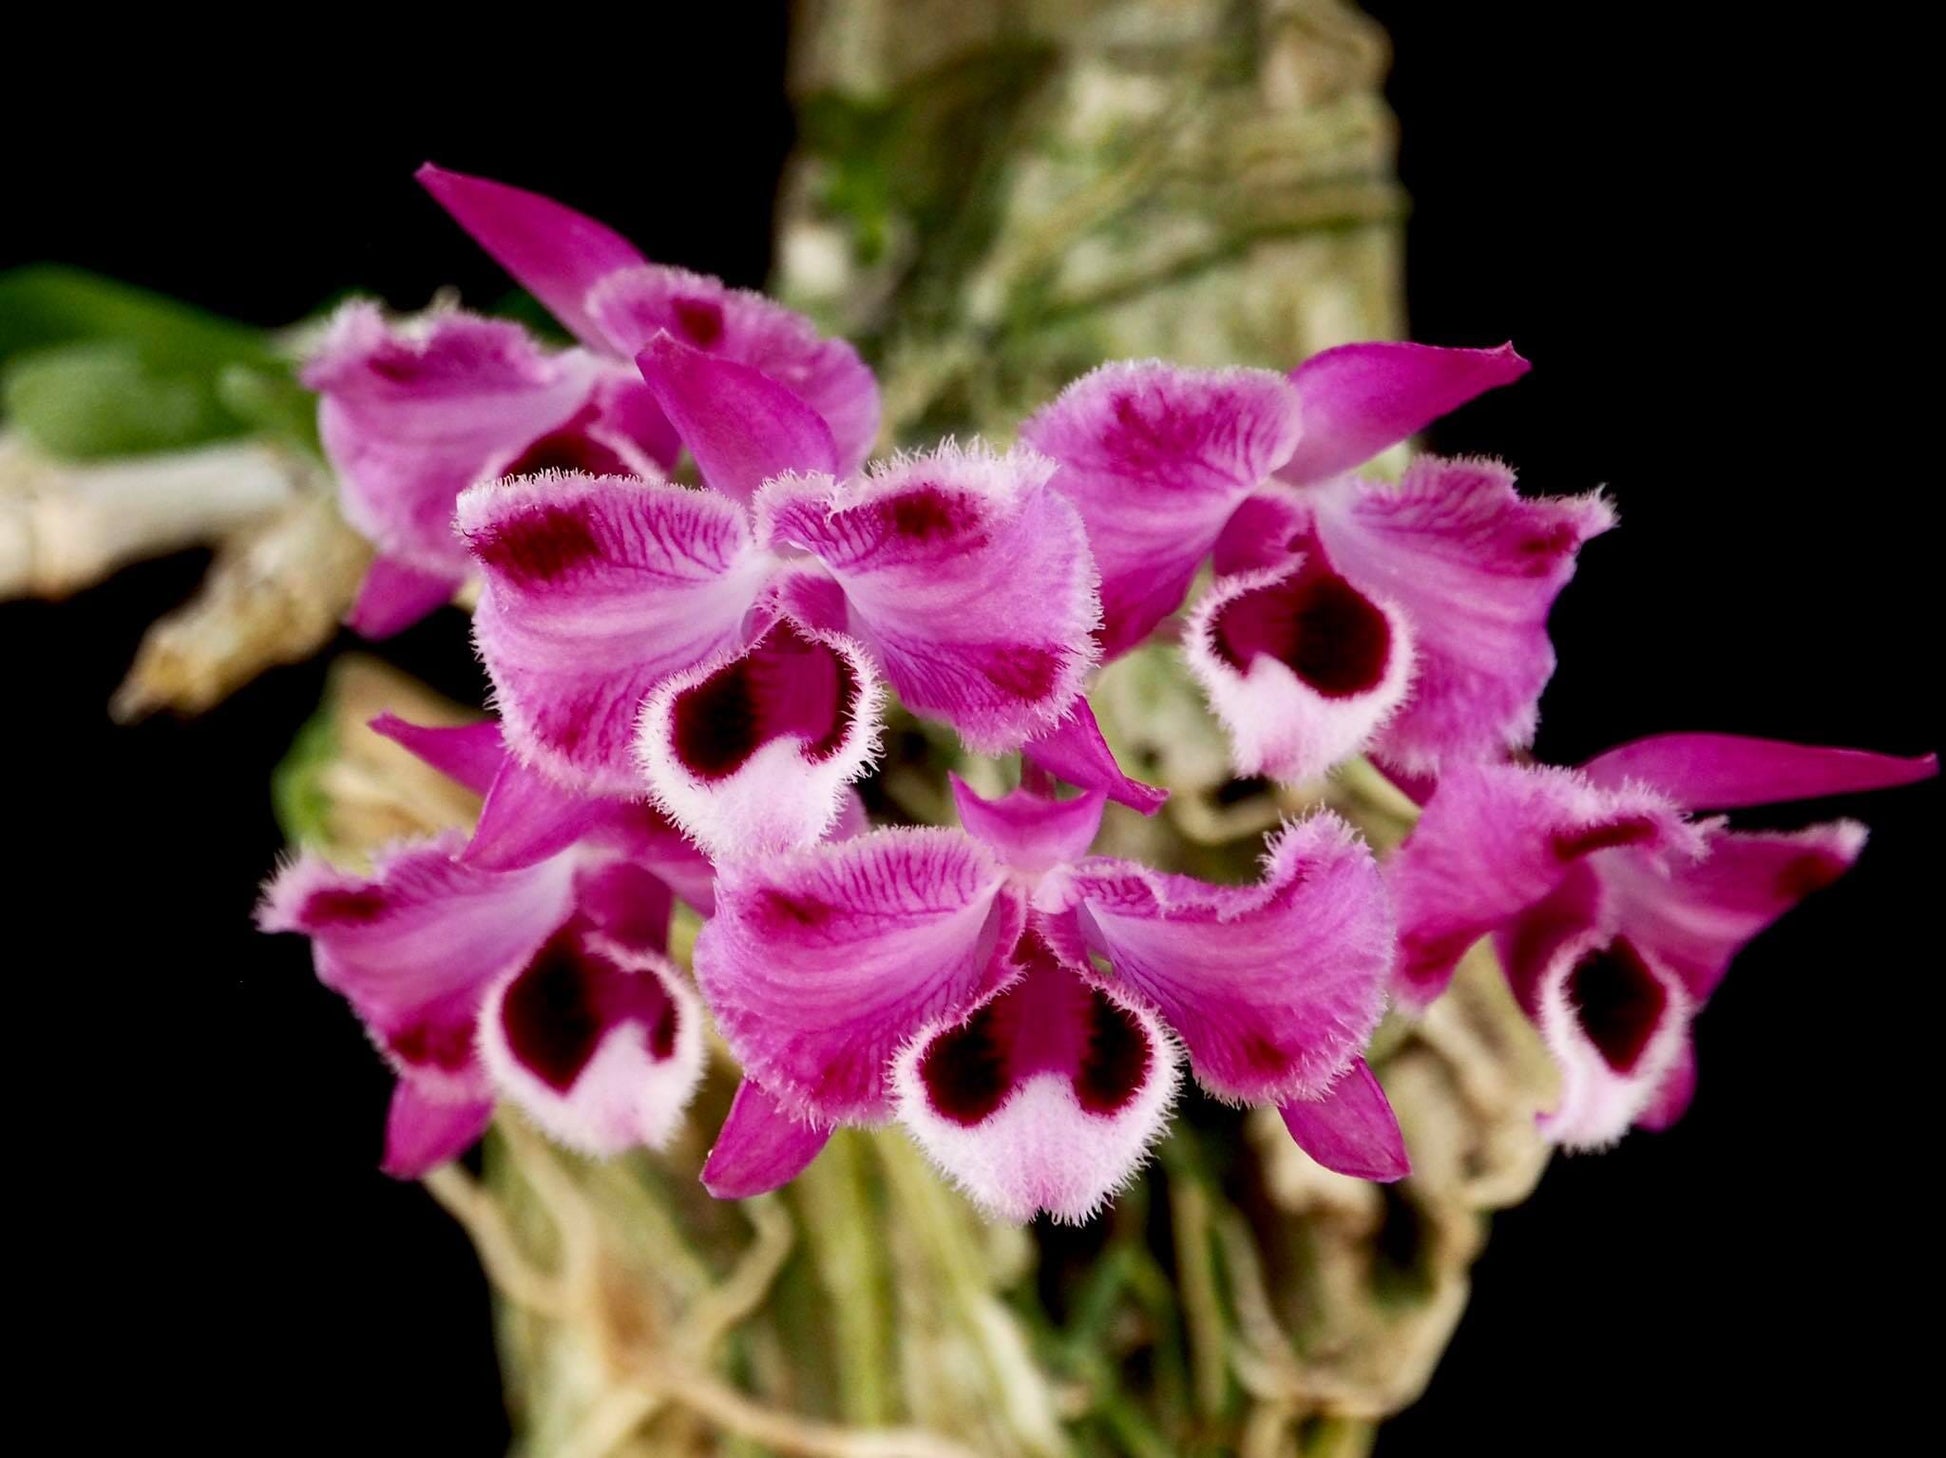 Dendrobium parishii var. semi alba Dendrobium La Foresta Orchids var. rubra 'Trilabelo' 